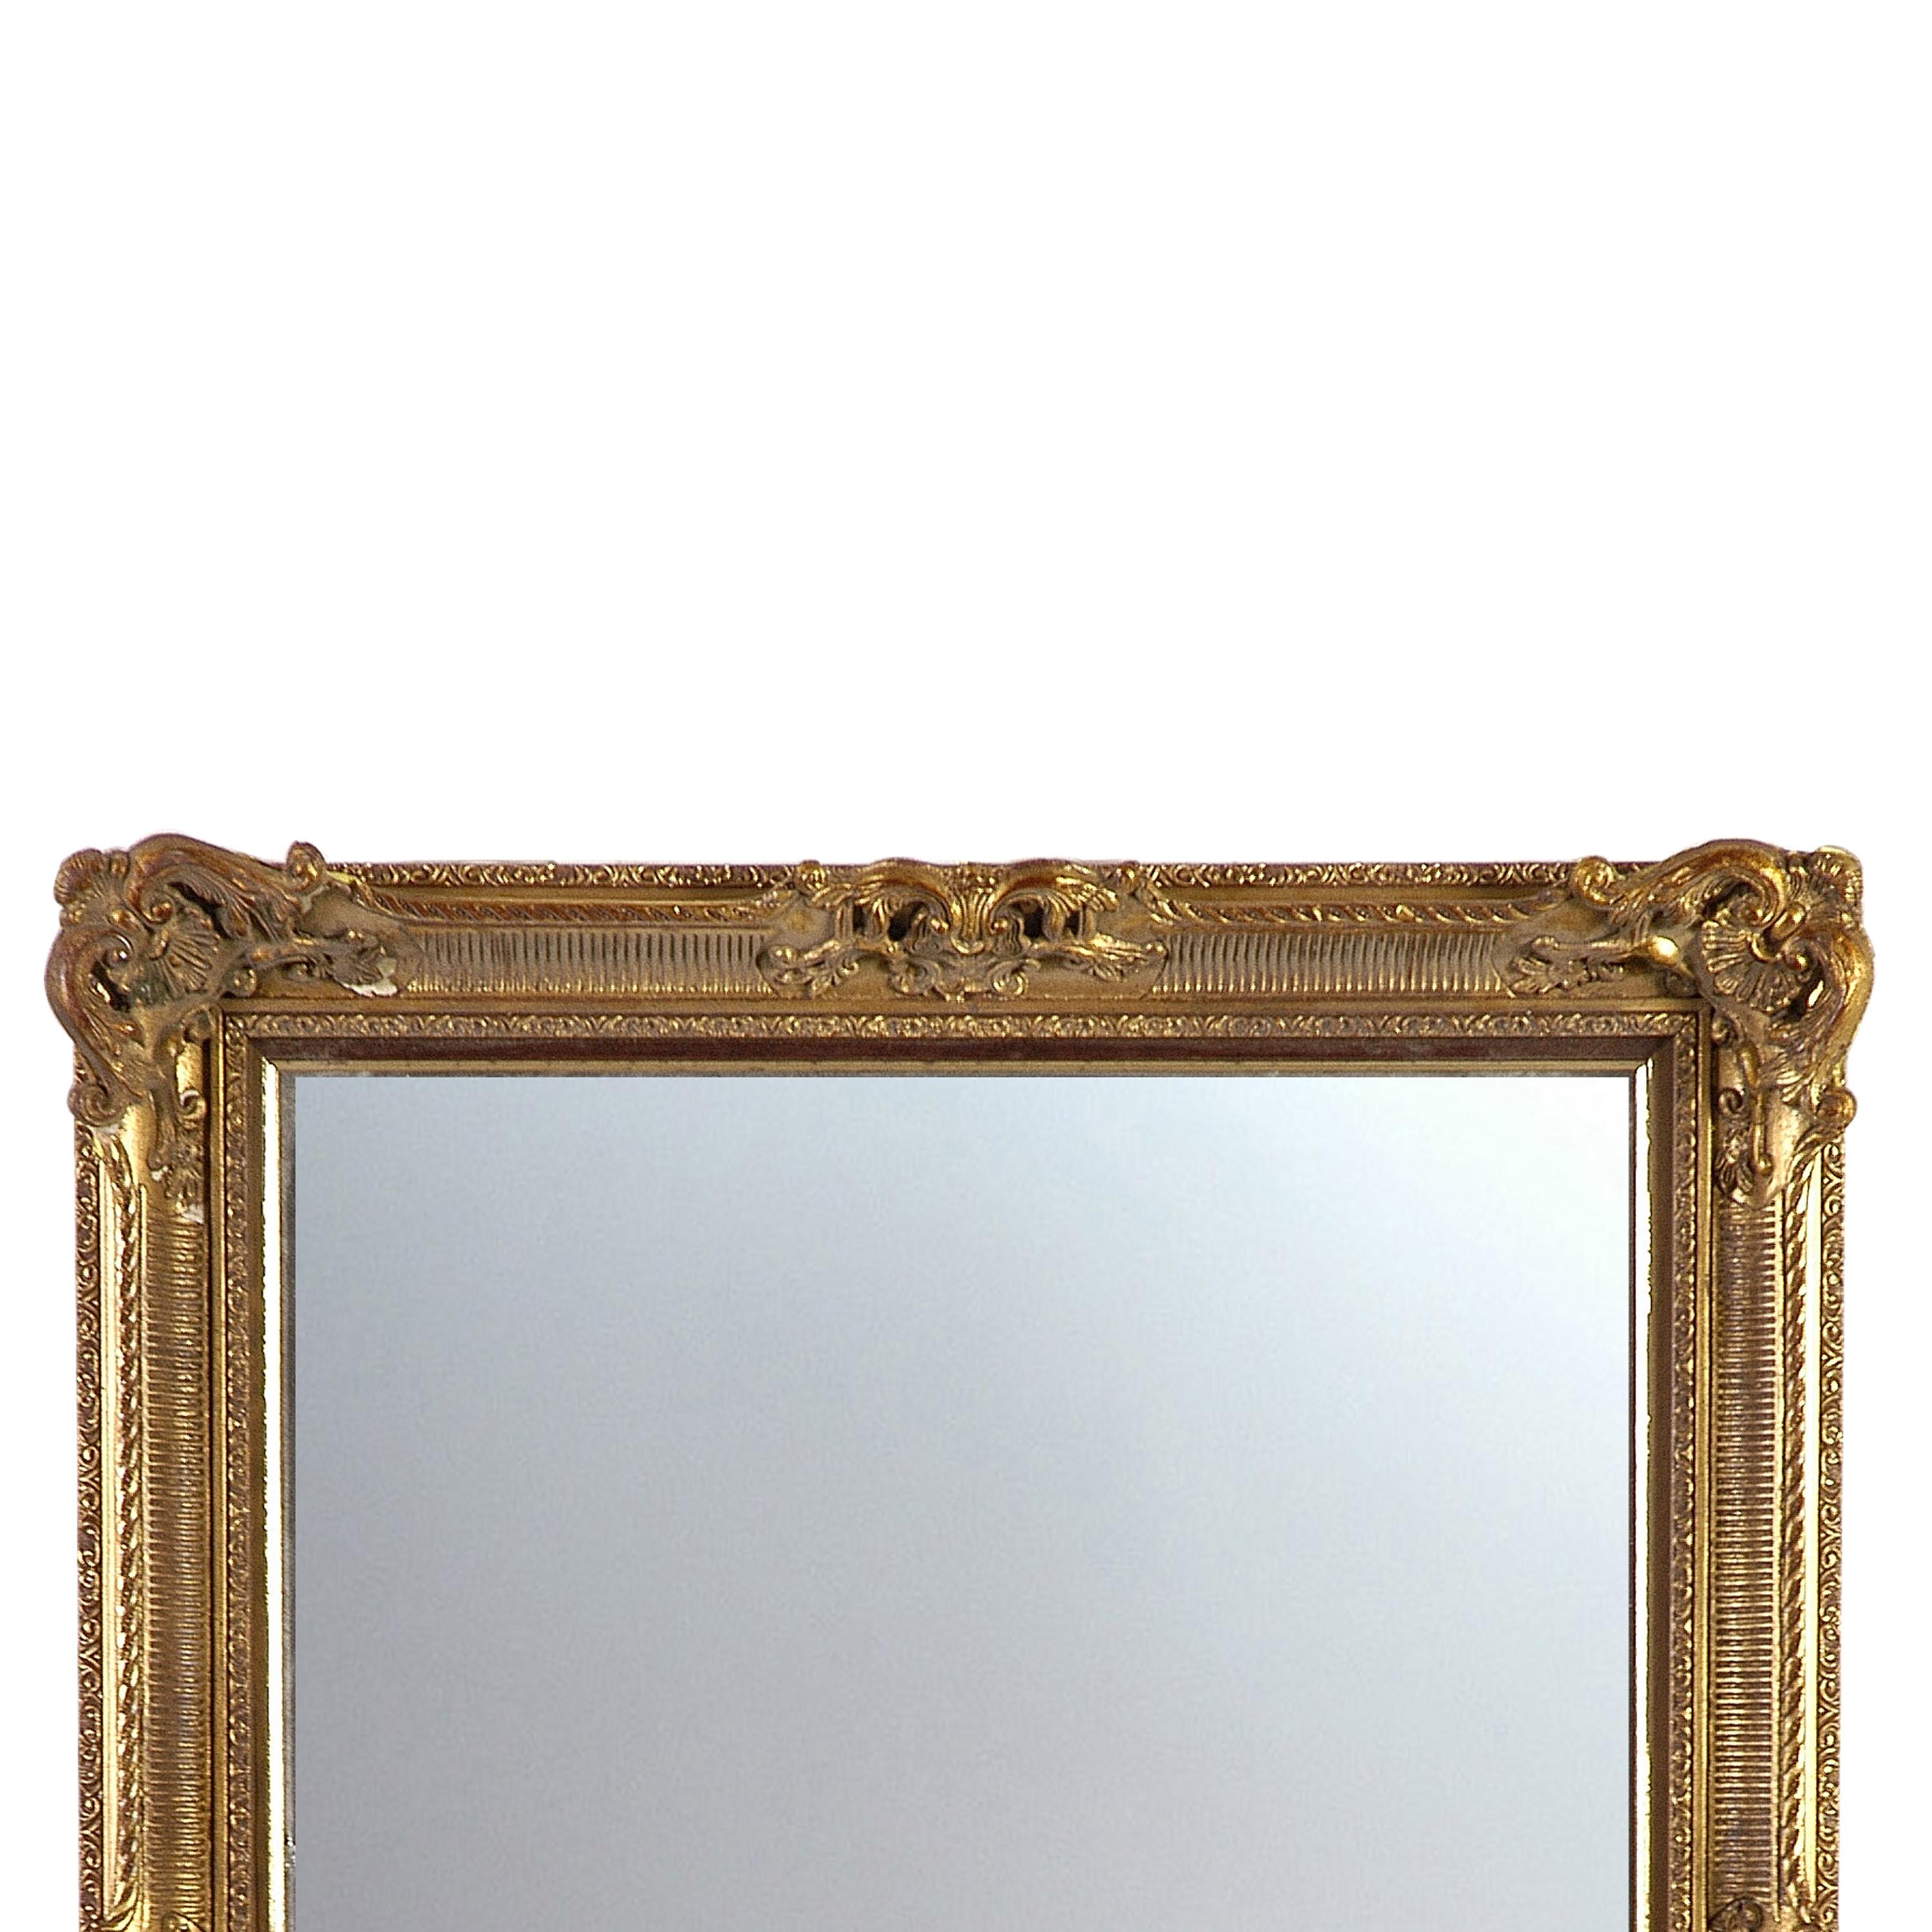 Handgefertigter Spiegel im neoklassizistischen Regency-Stil. Rechteckige, handgeschnitzte Holzstruktur mit goldfarbener Oberfläche, Spanien, 1970.